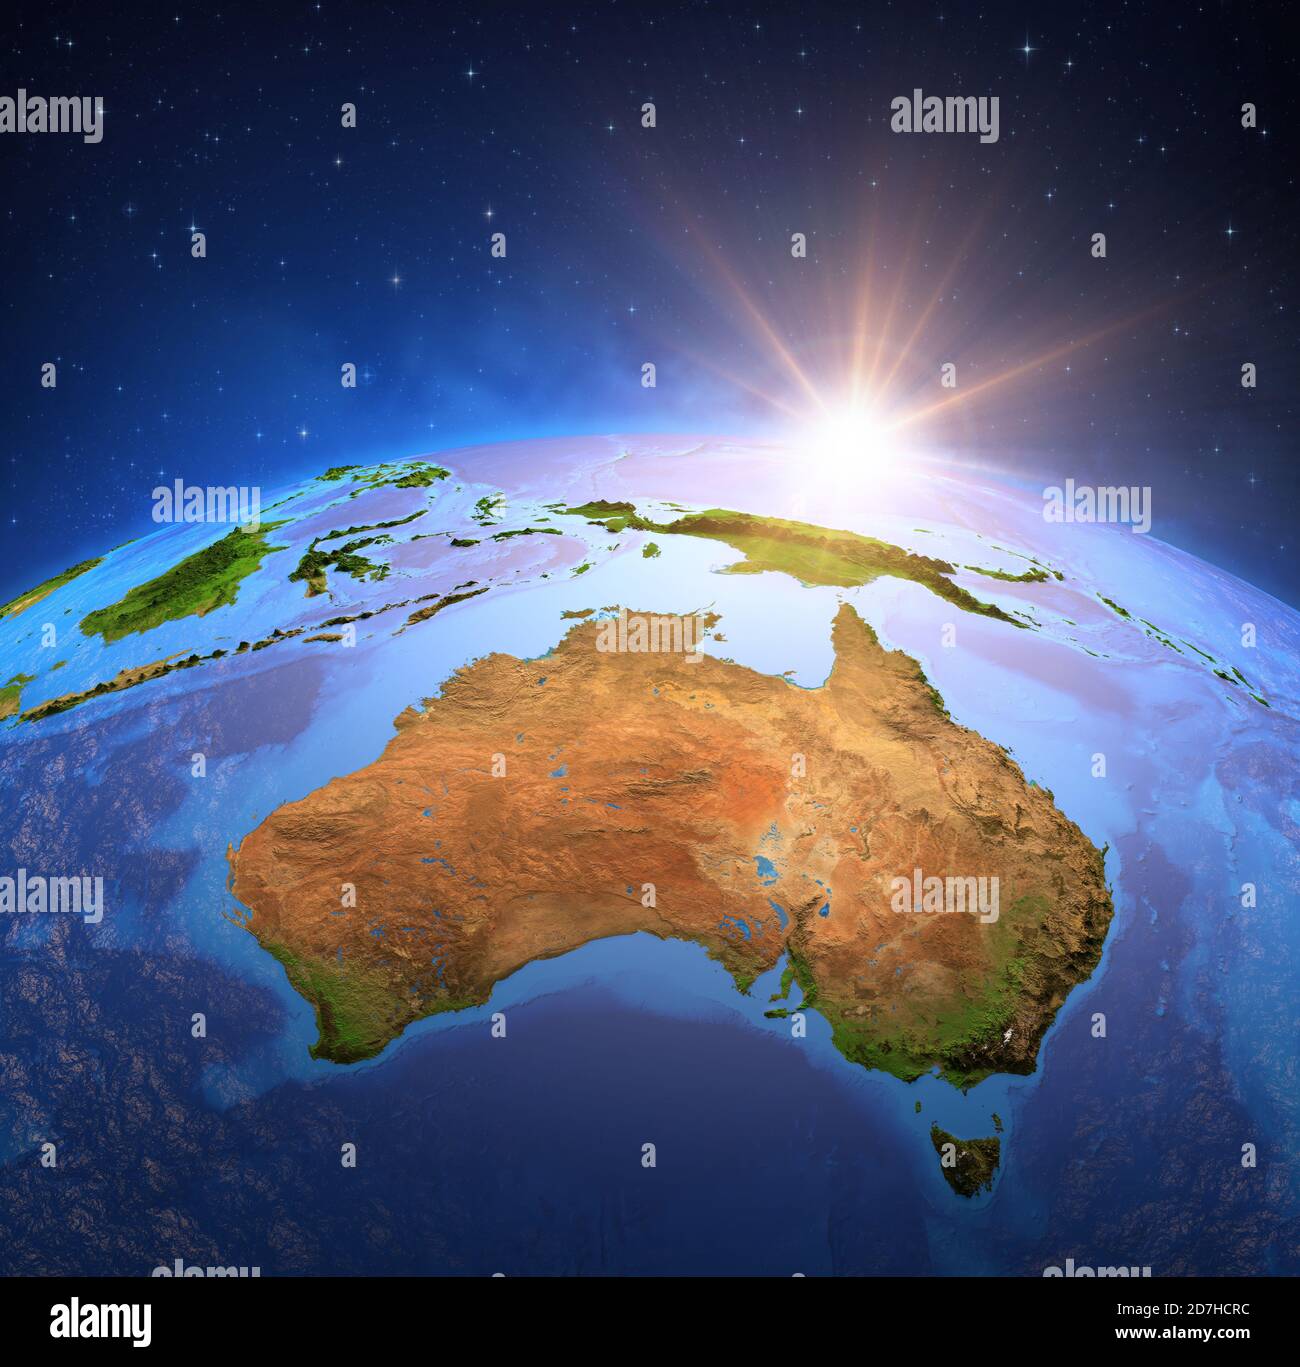 Oberfläche des Planeten Erde von einem Satelliten aus betrachtet, fokussiert auf Australien, Sonne geht am Horizont auf. Karte des australischen Kontinents. NASA-Elemente. Stockfoto